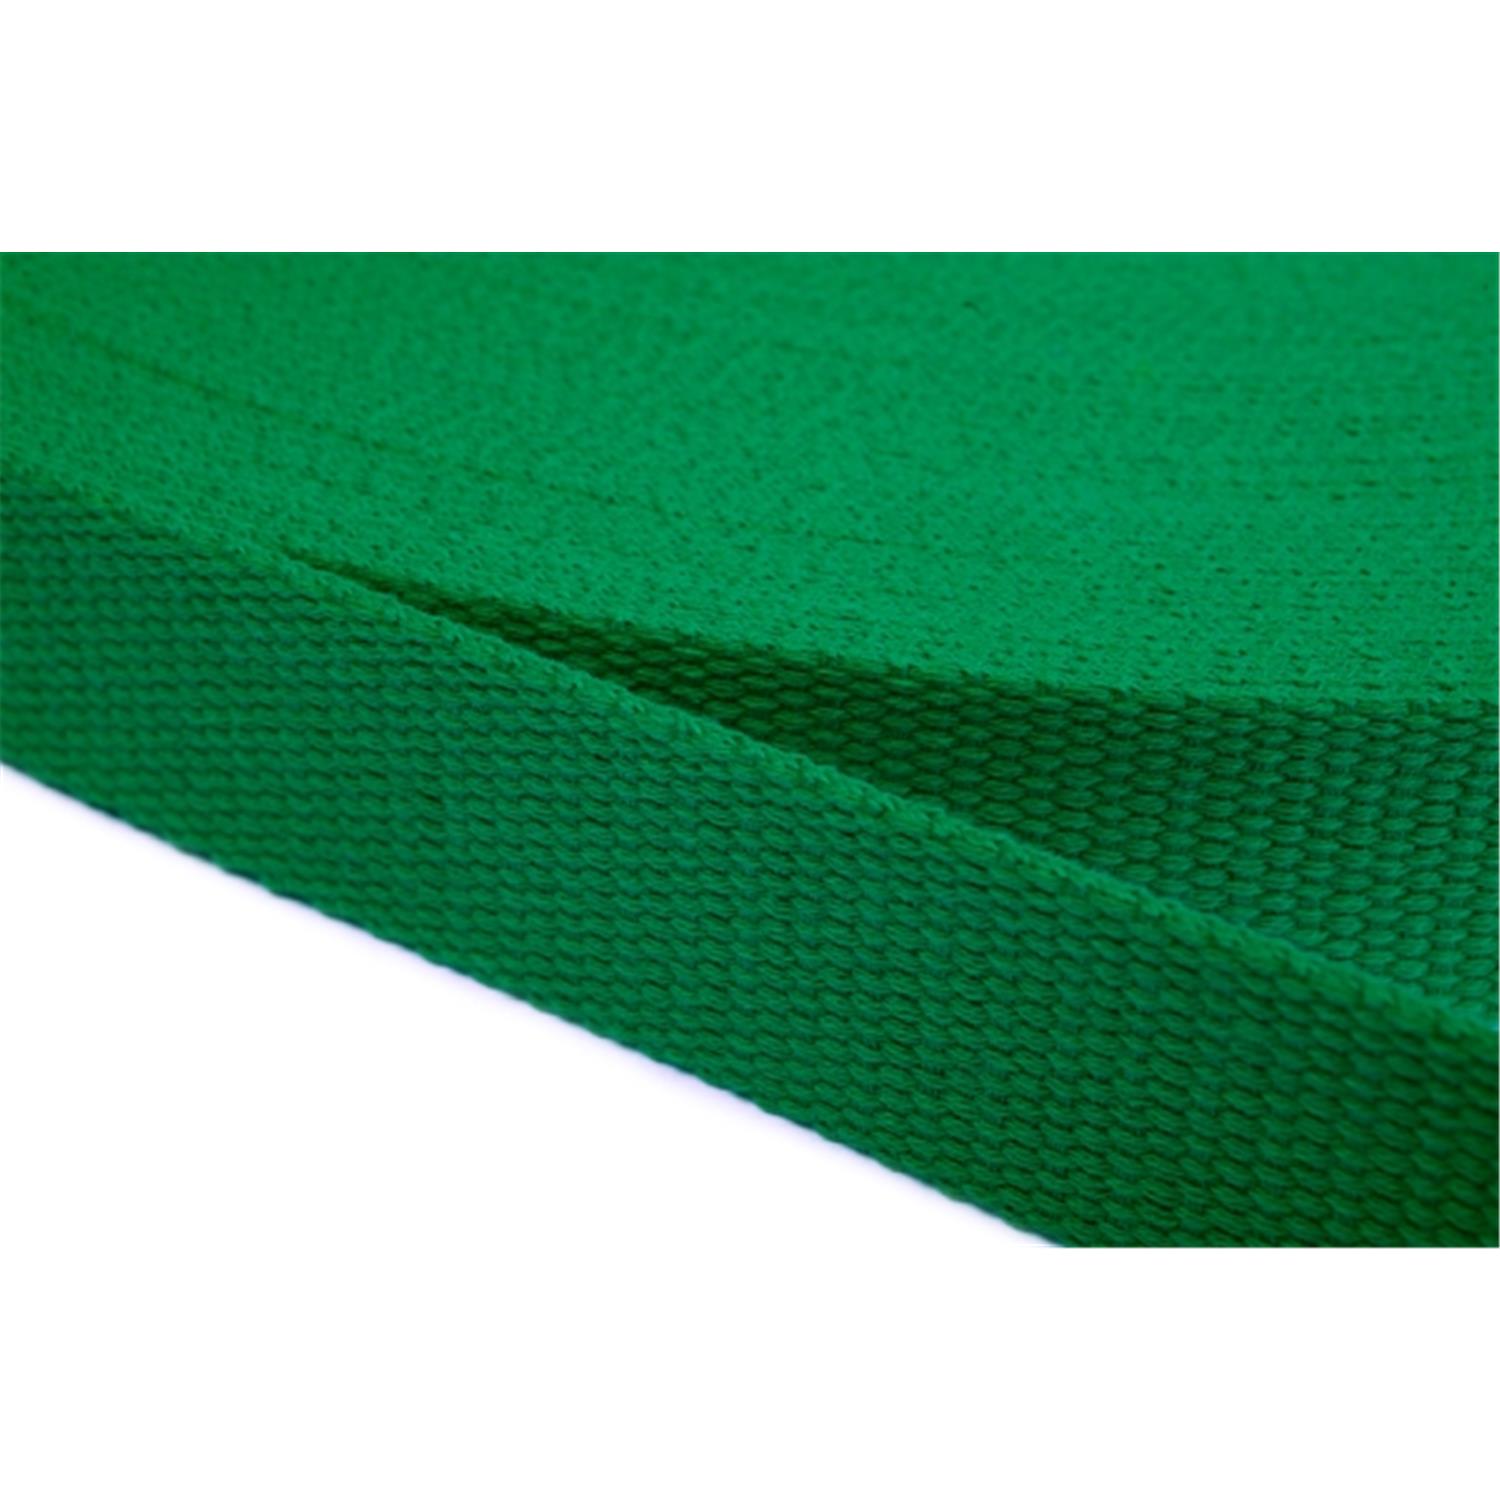 Gurtband aus Baumwolle 15mm in 20 Farben 16 - grün 6 Meter